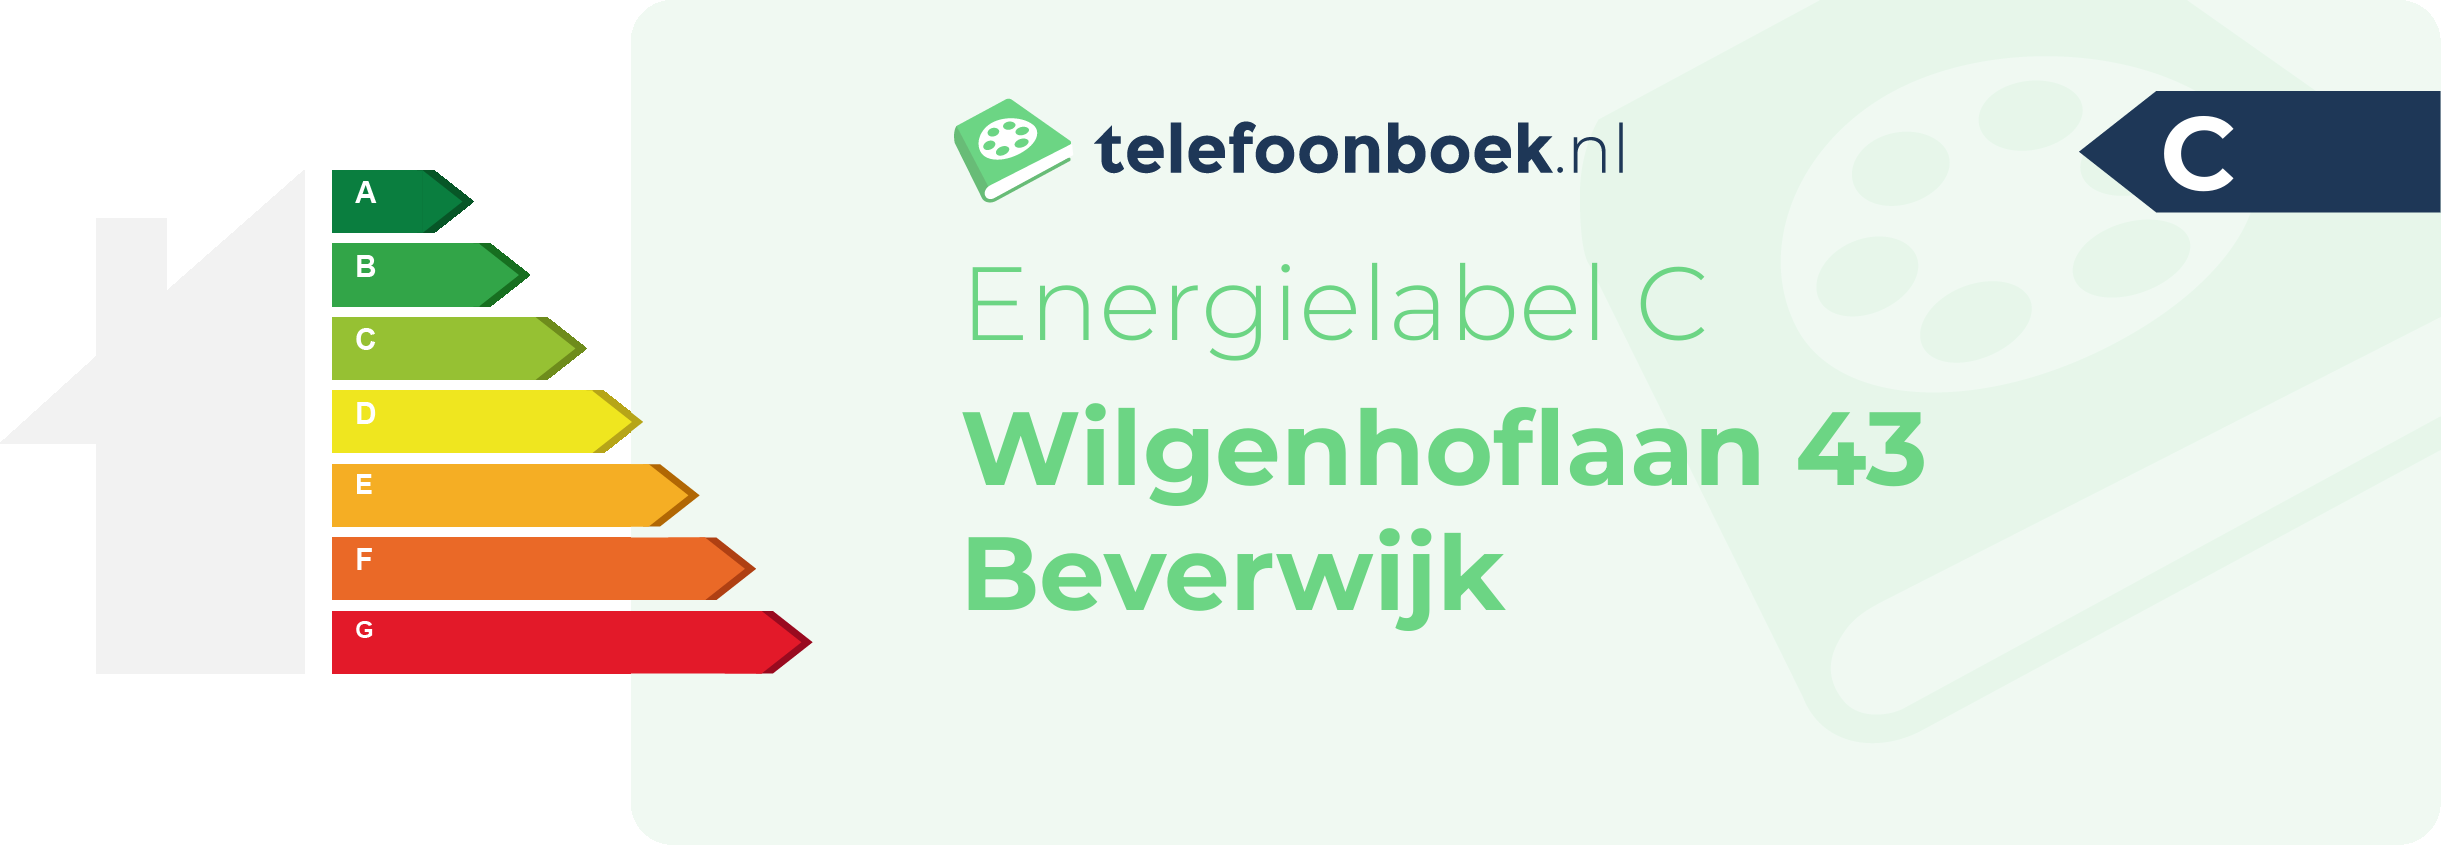 Energielabel Wilgenhoflaan 43 Beverwijk